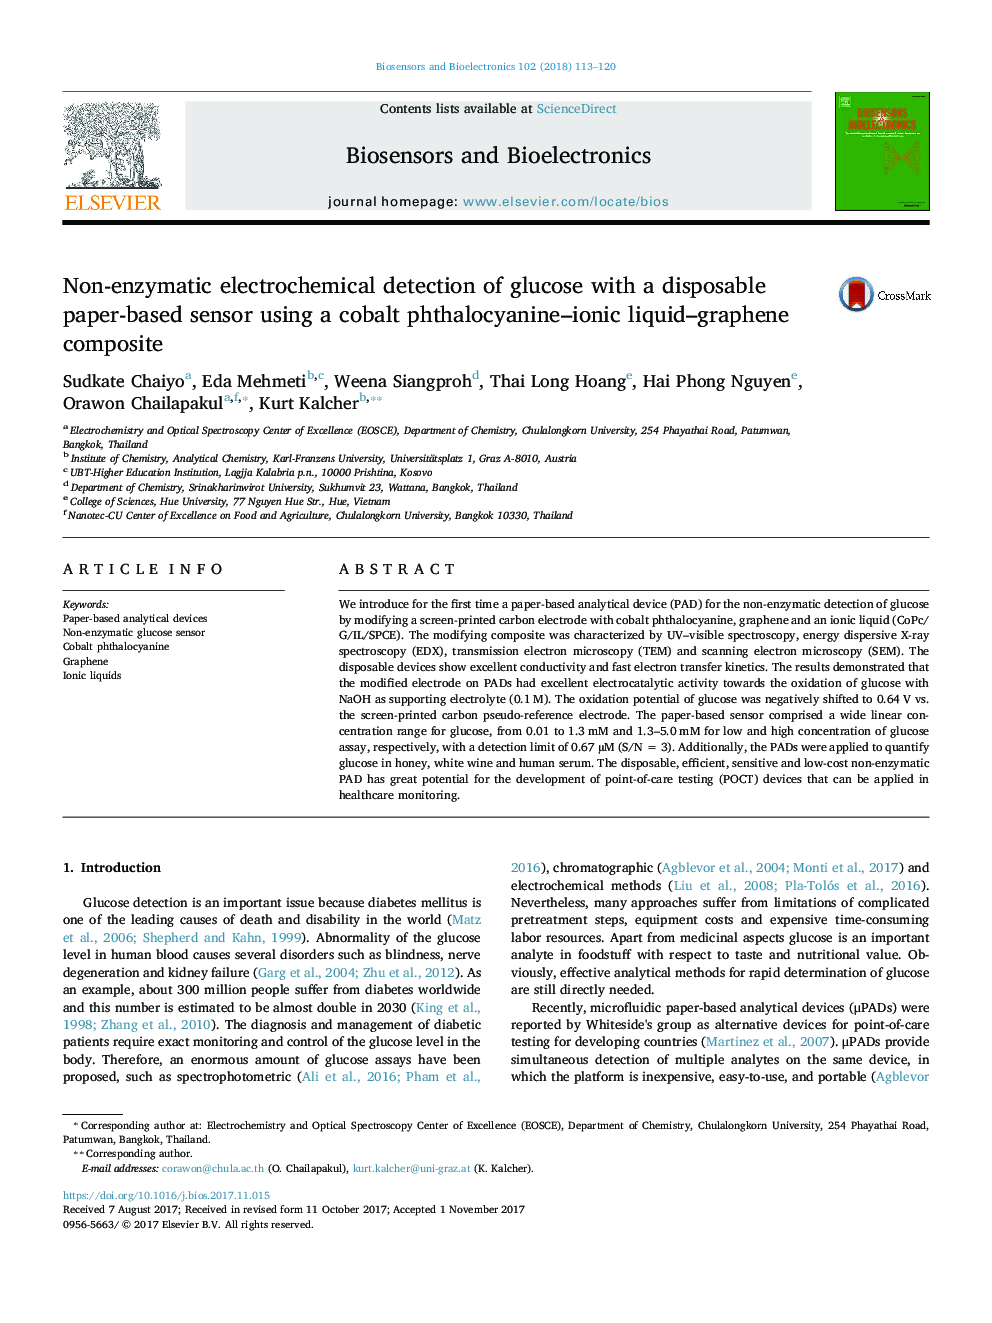 تشخیص الکتروشیمیایی غیر آنزیمی گلوکز با یک سنسور مبتنی بر کاغذ یکبار مصرف با استفاده از کامپوزیت ماتری گرافن فتالوسیانین یونیک کبالت 